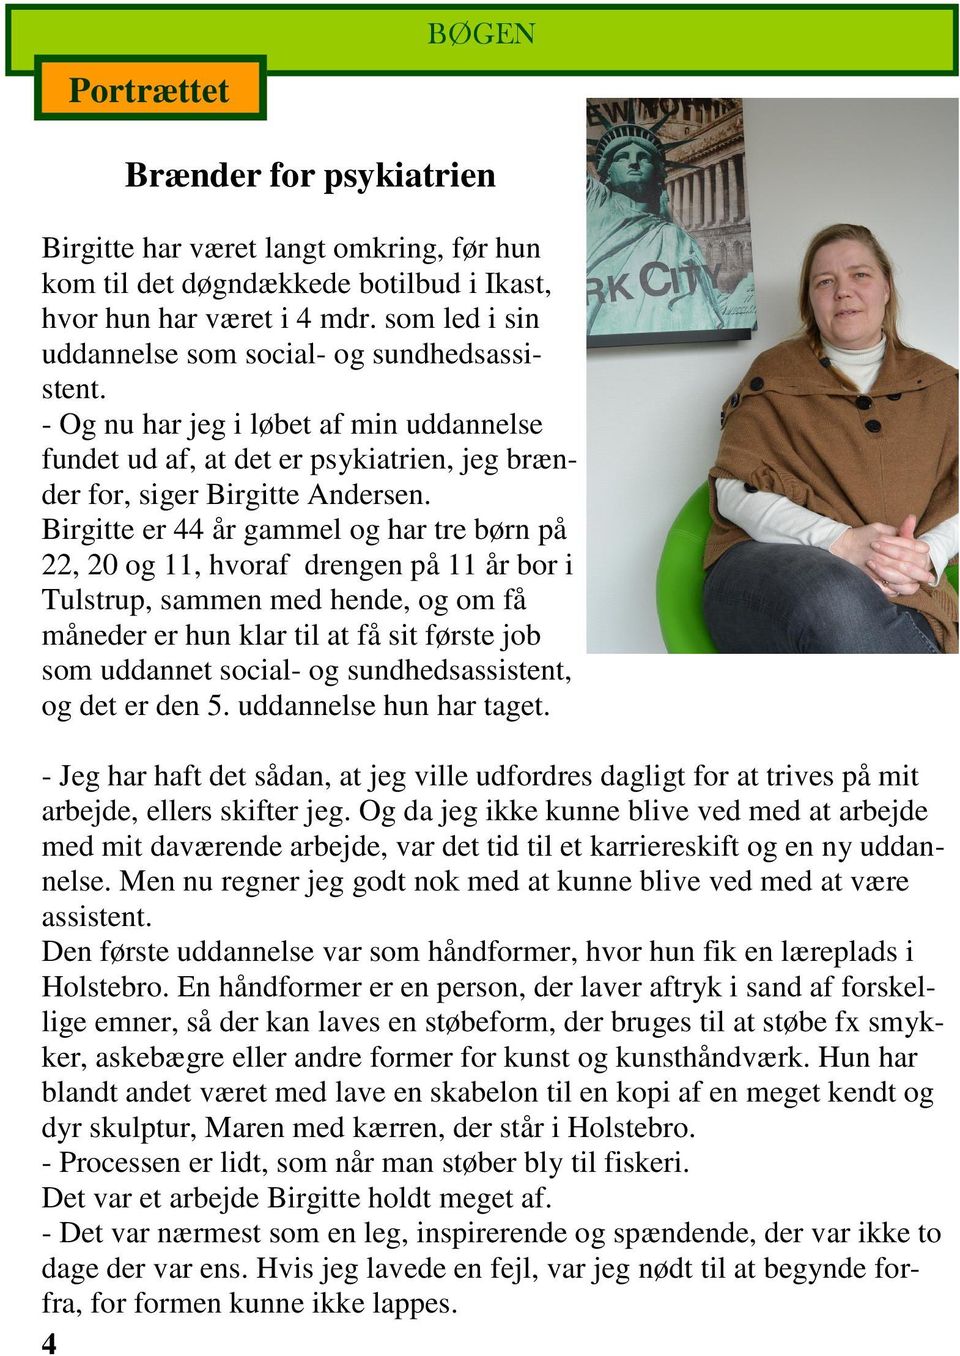 Birgitte er 44 år gammel og har tre børn på 22, 20 og 11, hvoraf drengen på 11 år bor i Tulstrup, sammen med hende, og om få måneder er hun klar til at få sit første job som uddannet social- og